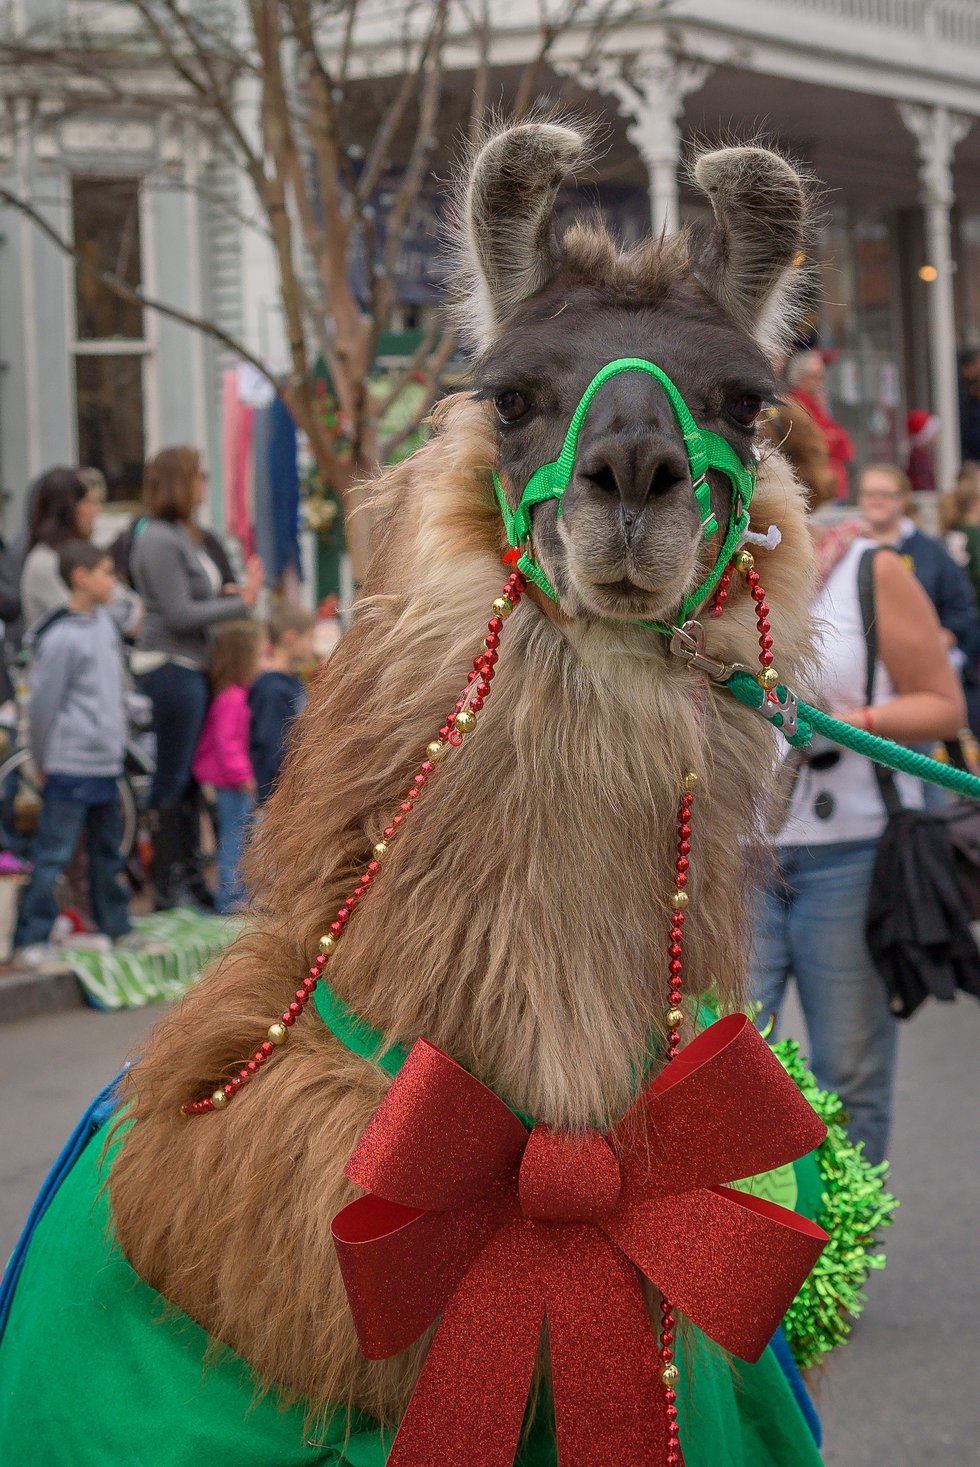 CISM_Parade_Llamas_CourtesyWilliamWillhelm.jpg